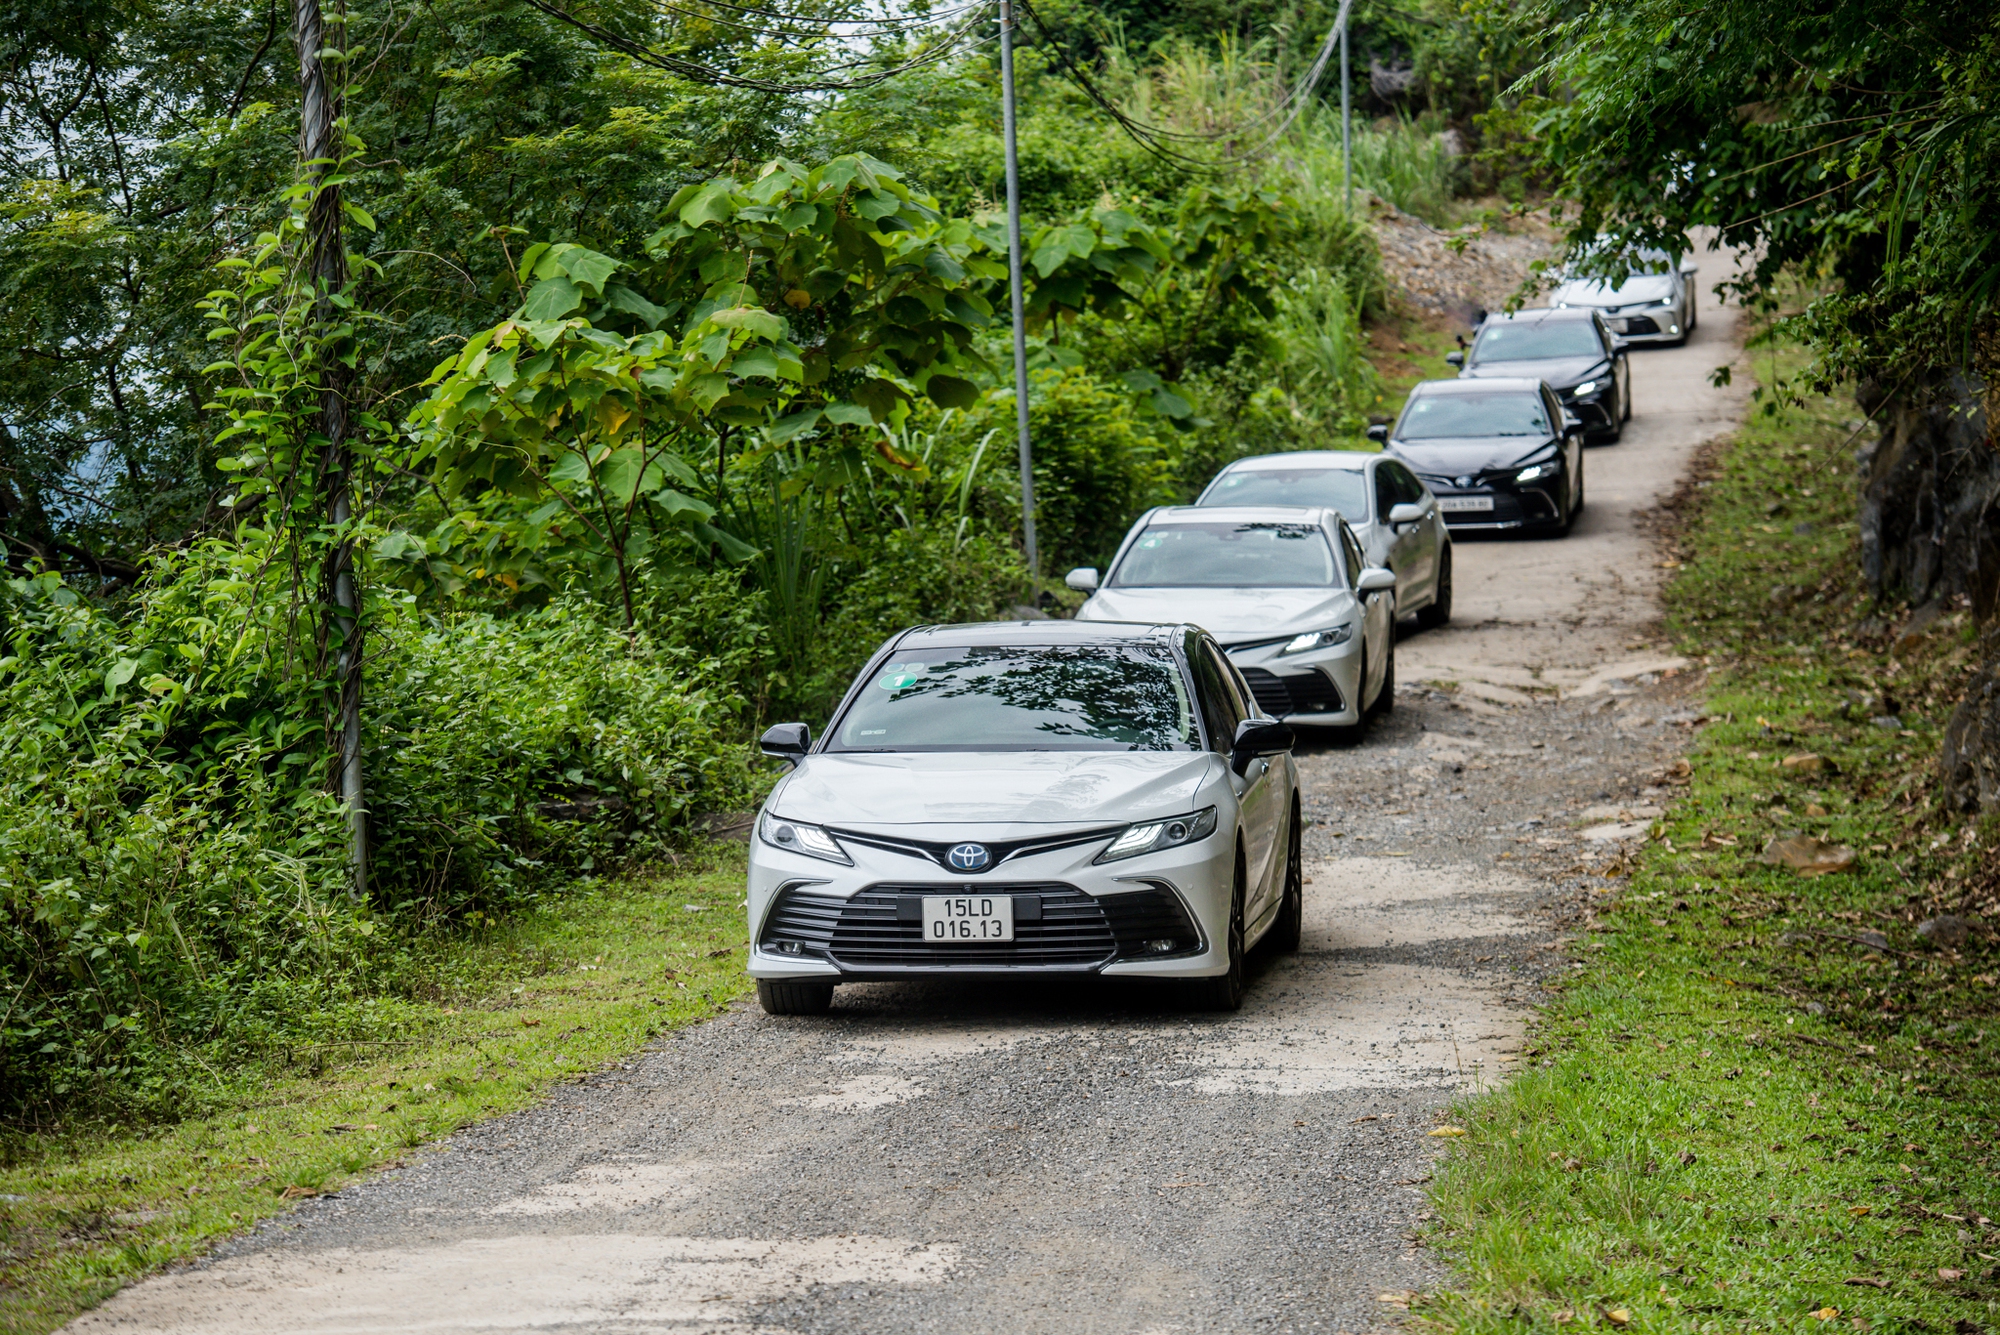 Trải nghiệm loạt ô tô hybrid của Toyota Hà Nội đến Mai Châu: Tưởng chỉ tiết kiệm nhưng còn thêm bất ngờ - ảnh 9